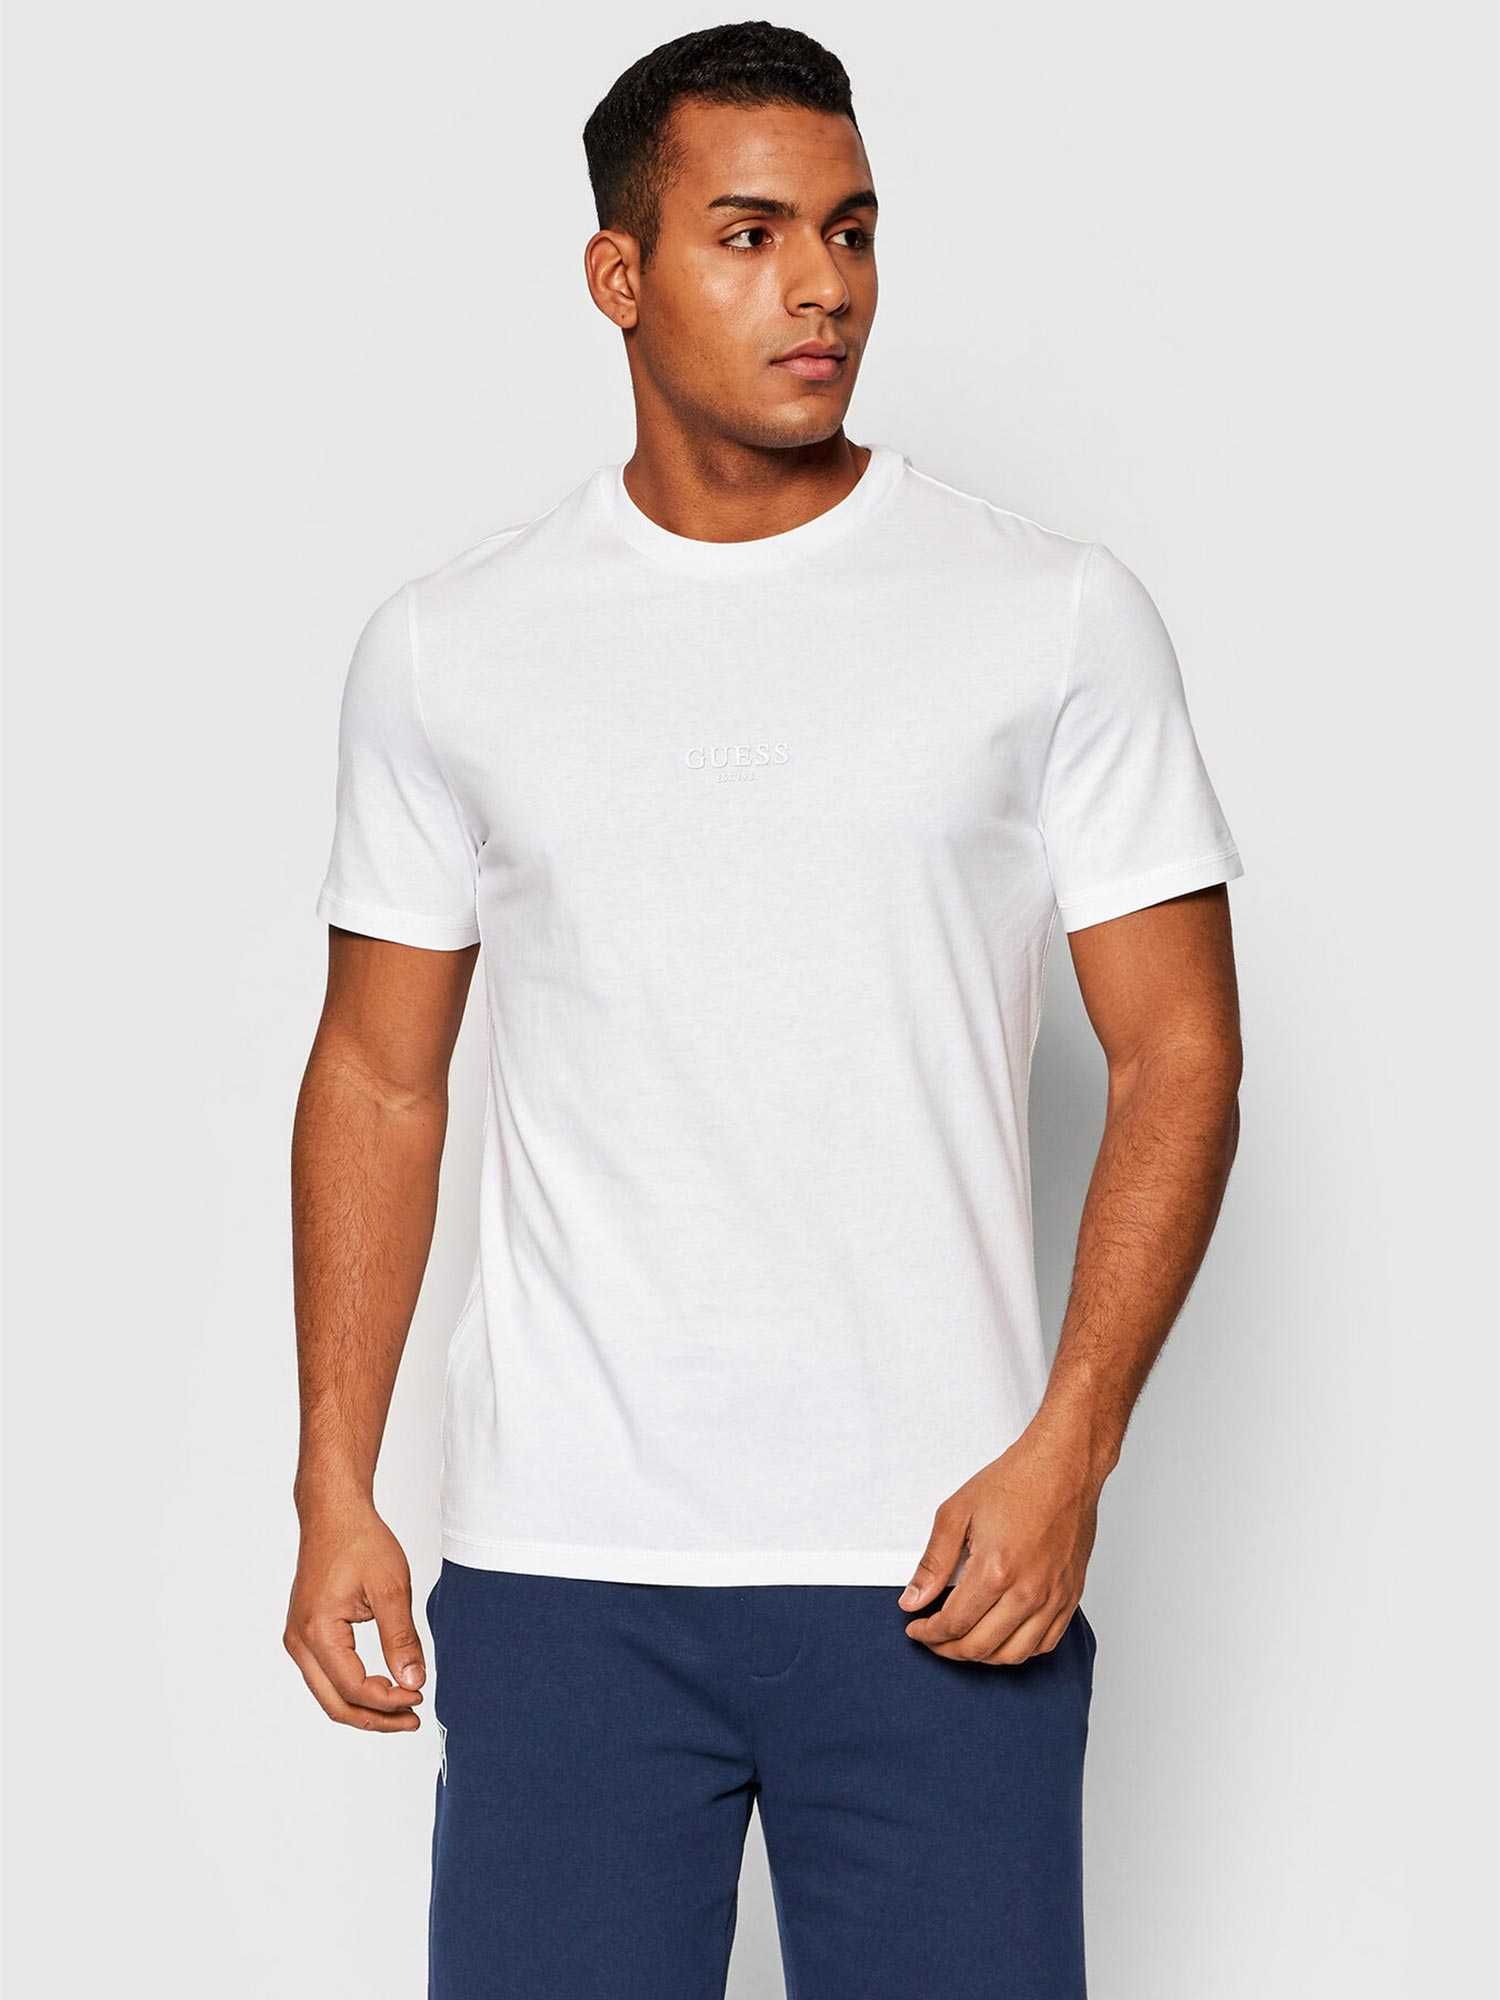 ПРОМО GUESS S/М/L/XL размери-Оригинална бяла тениска с гумиран надпис